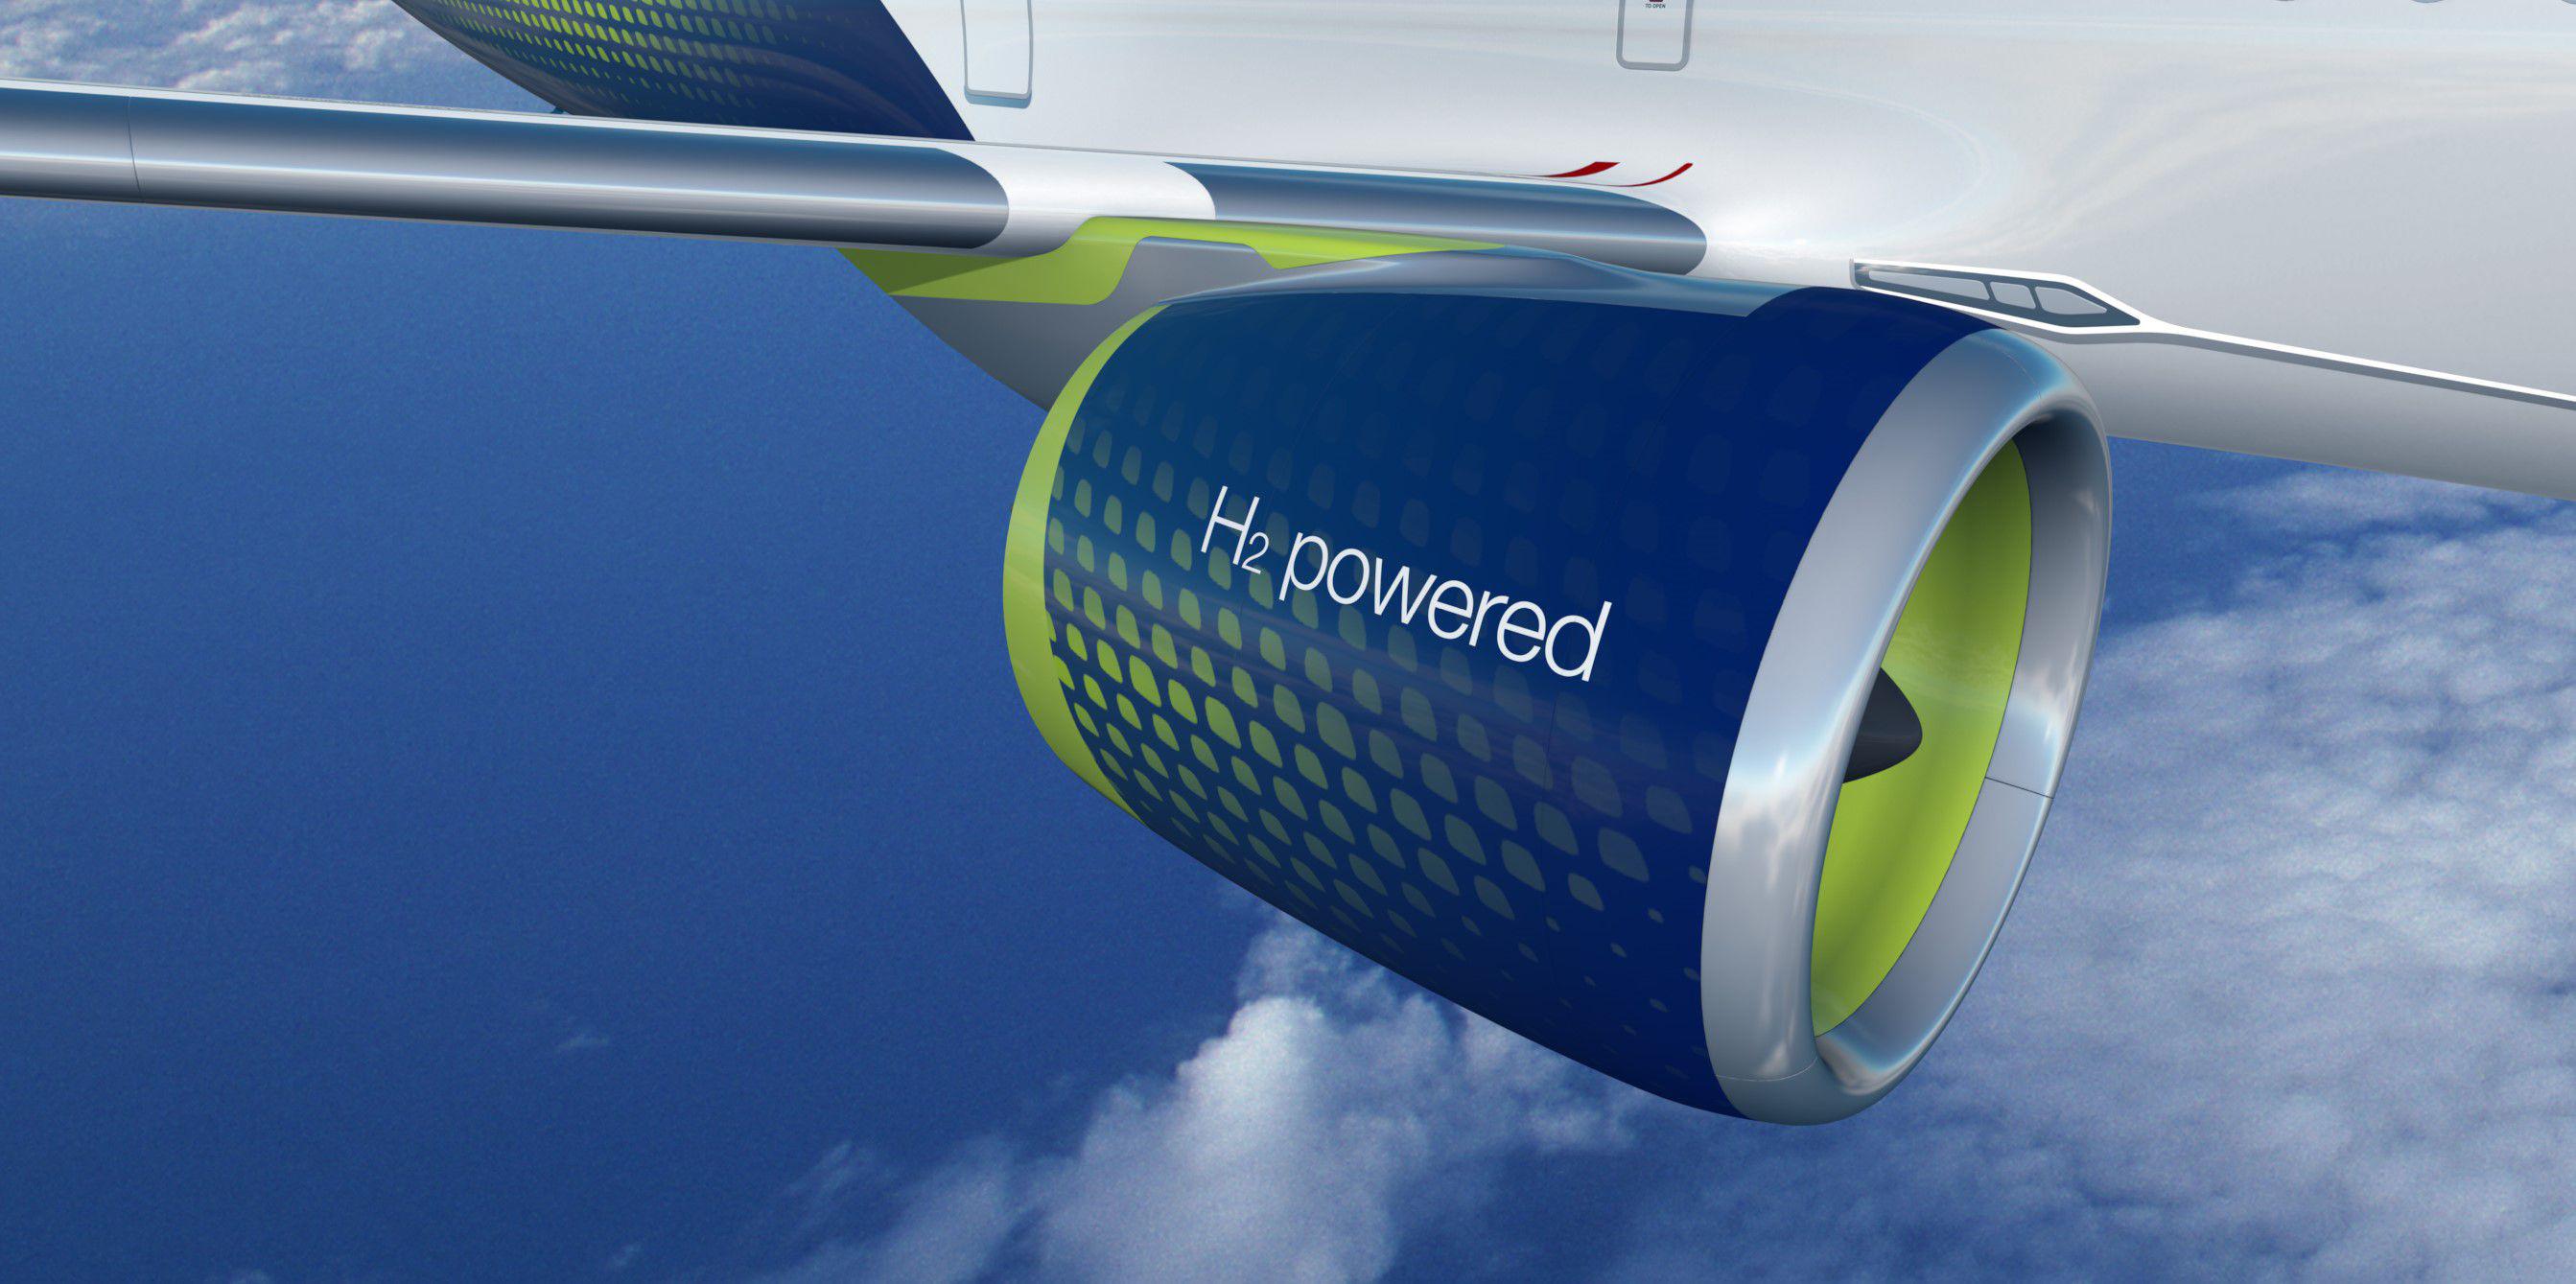 Airbus H2 hydrogen powered engine